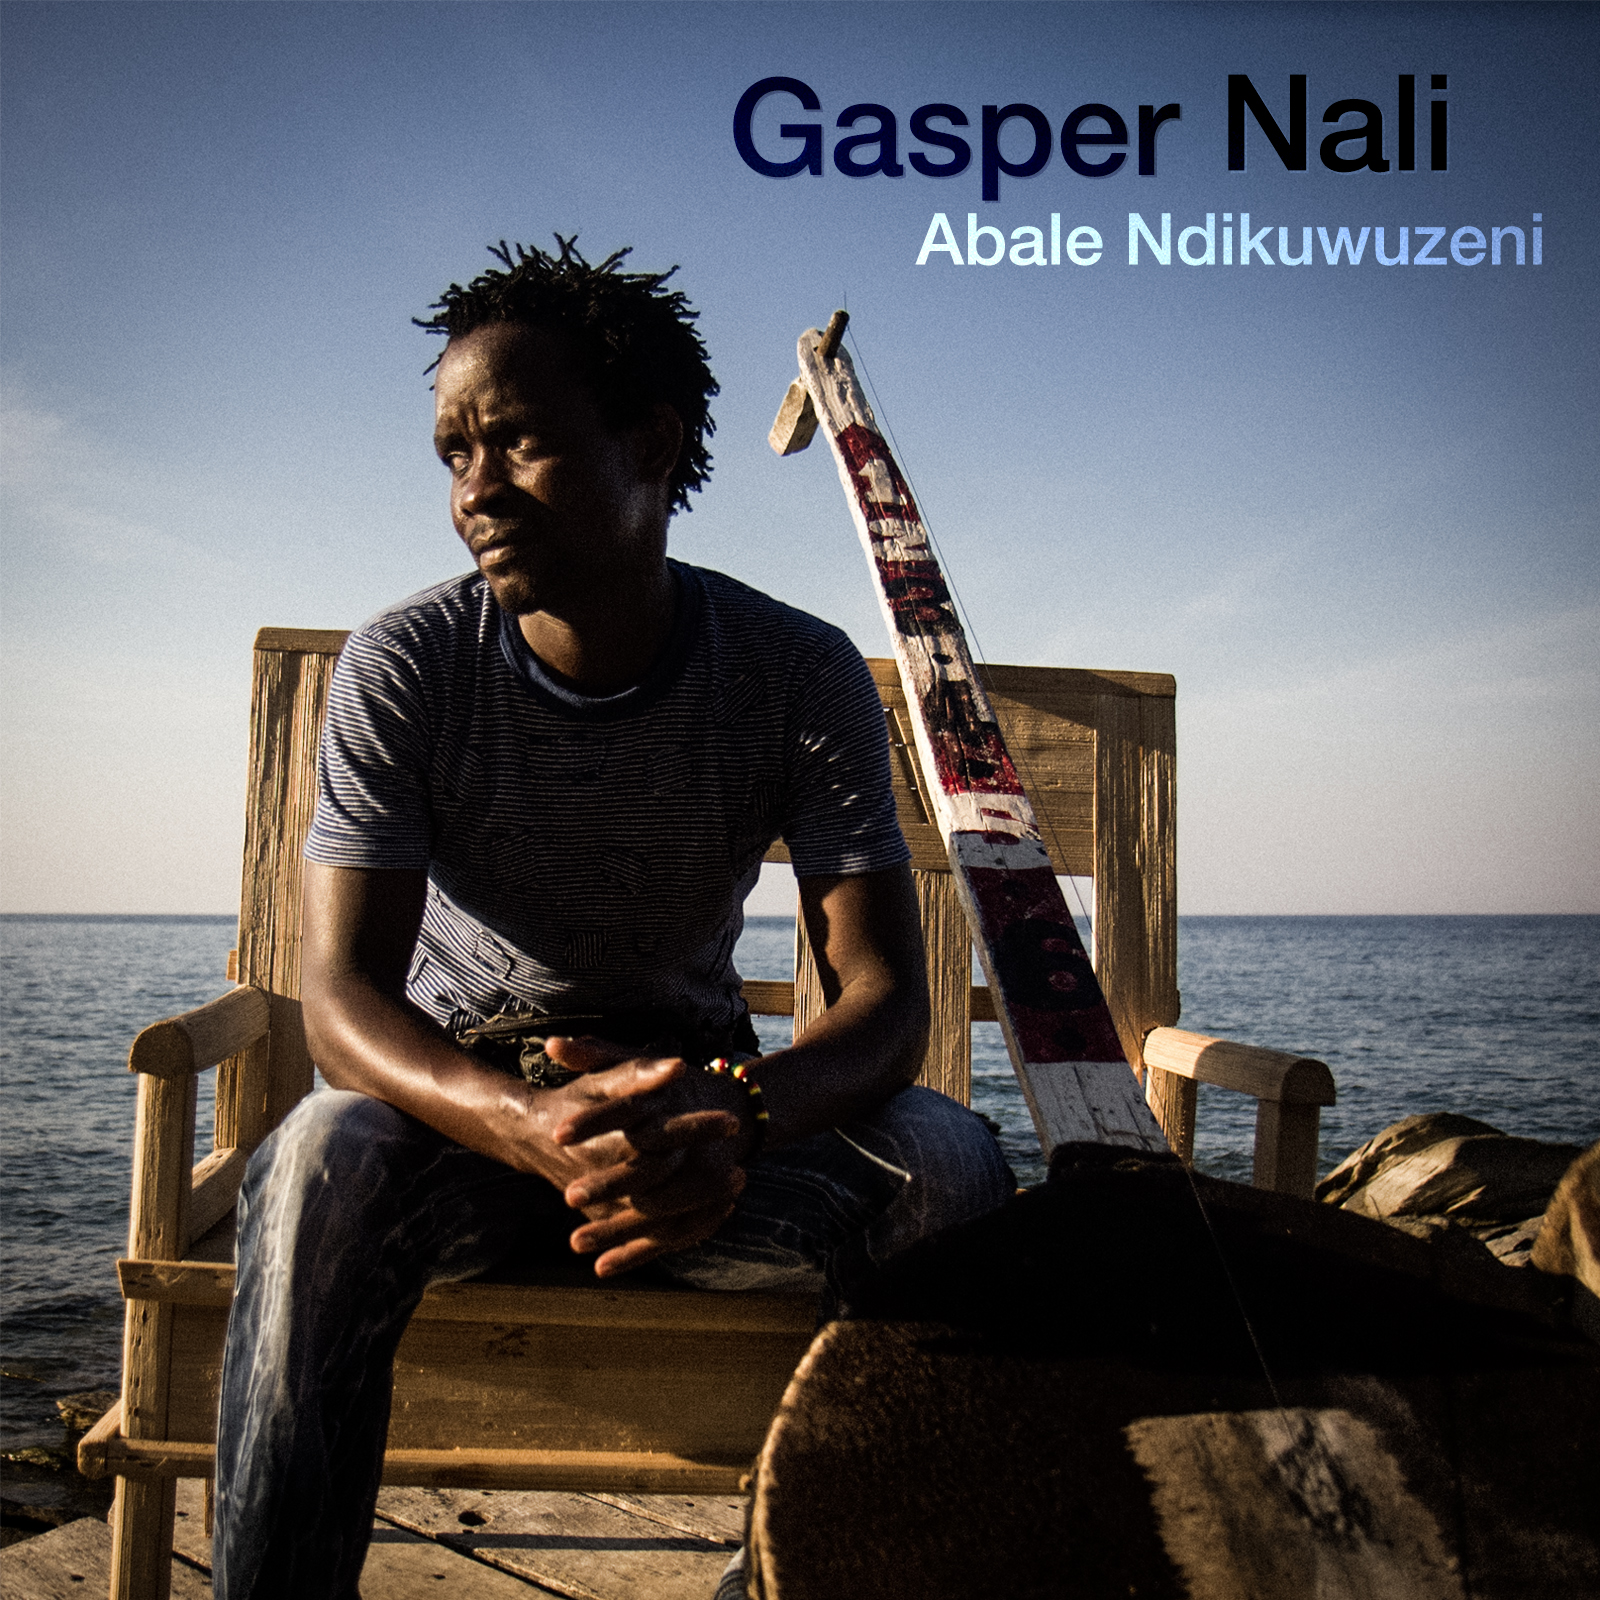 Gasper Nali album release date – Spare Dog Records